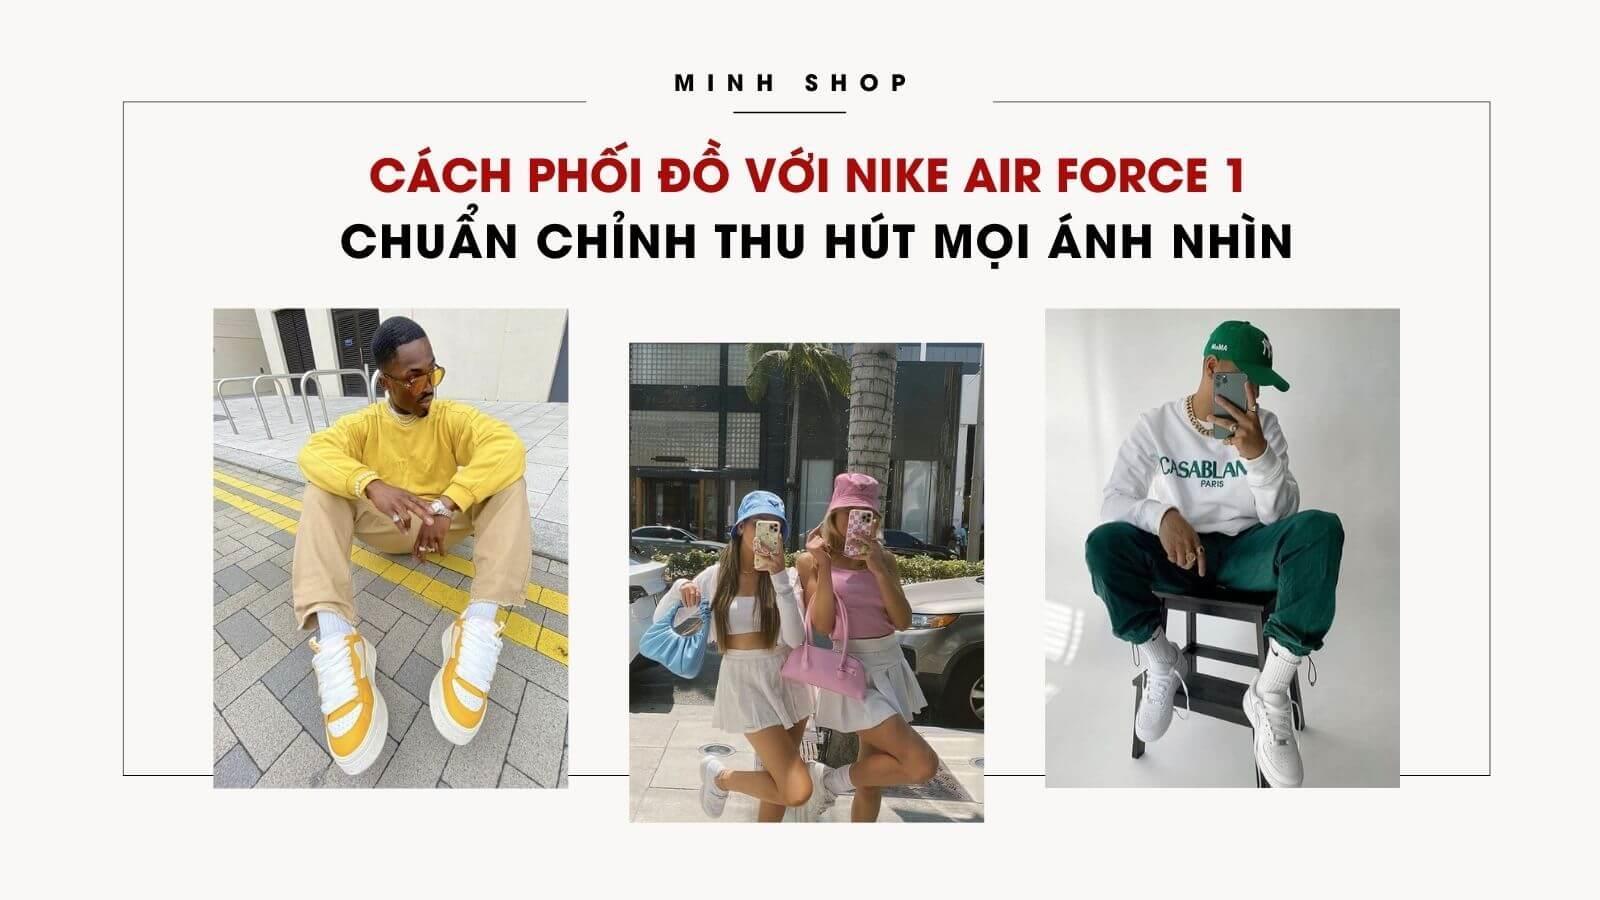 cach-phoi-do-voi-nike-air-force-1-chuan-chinh-thu-hut-moi-anh-nhin